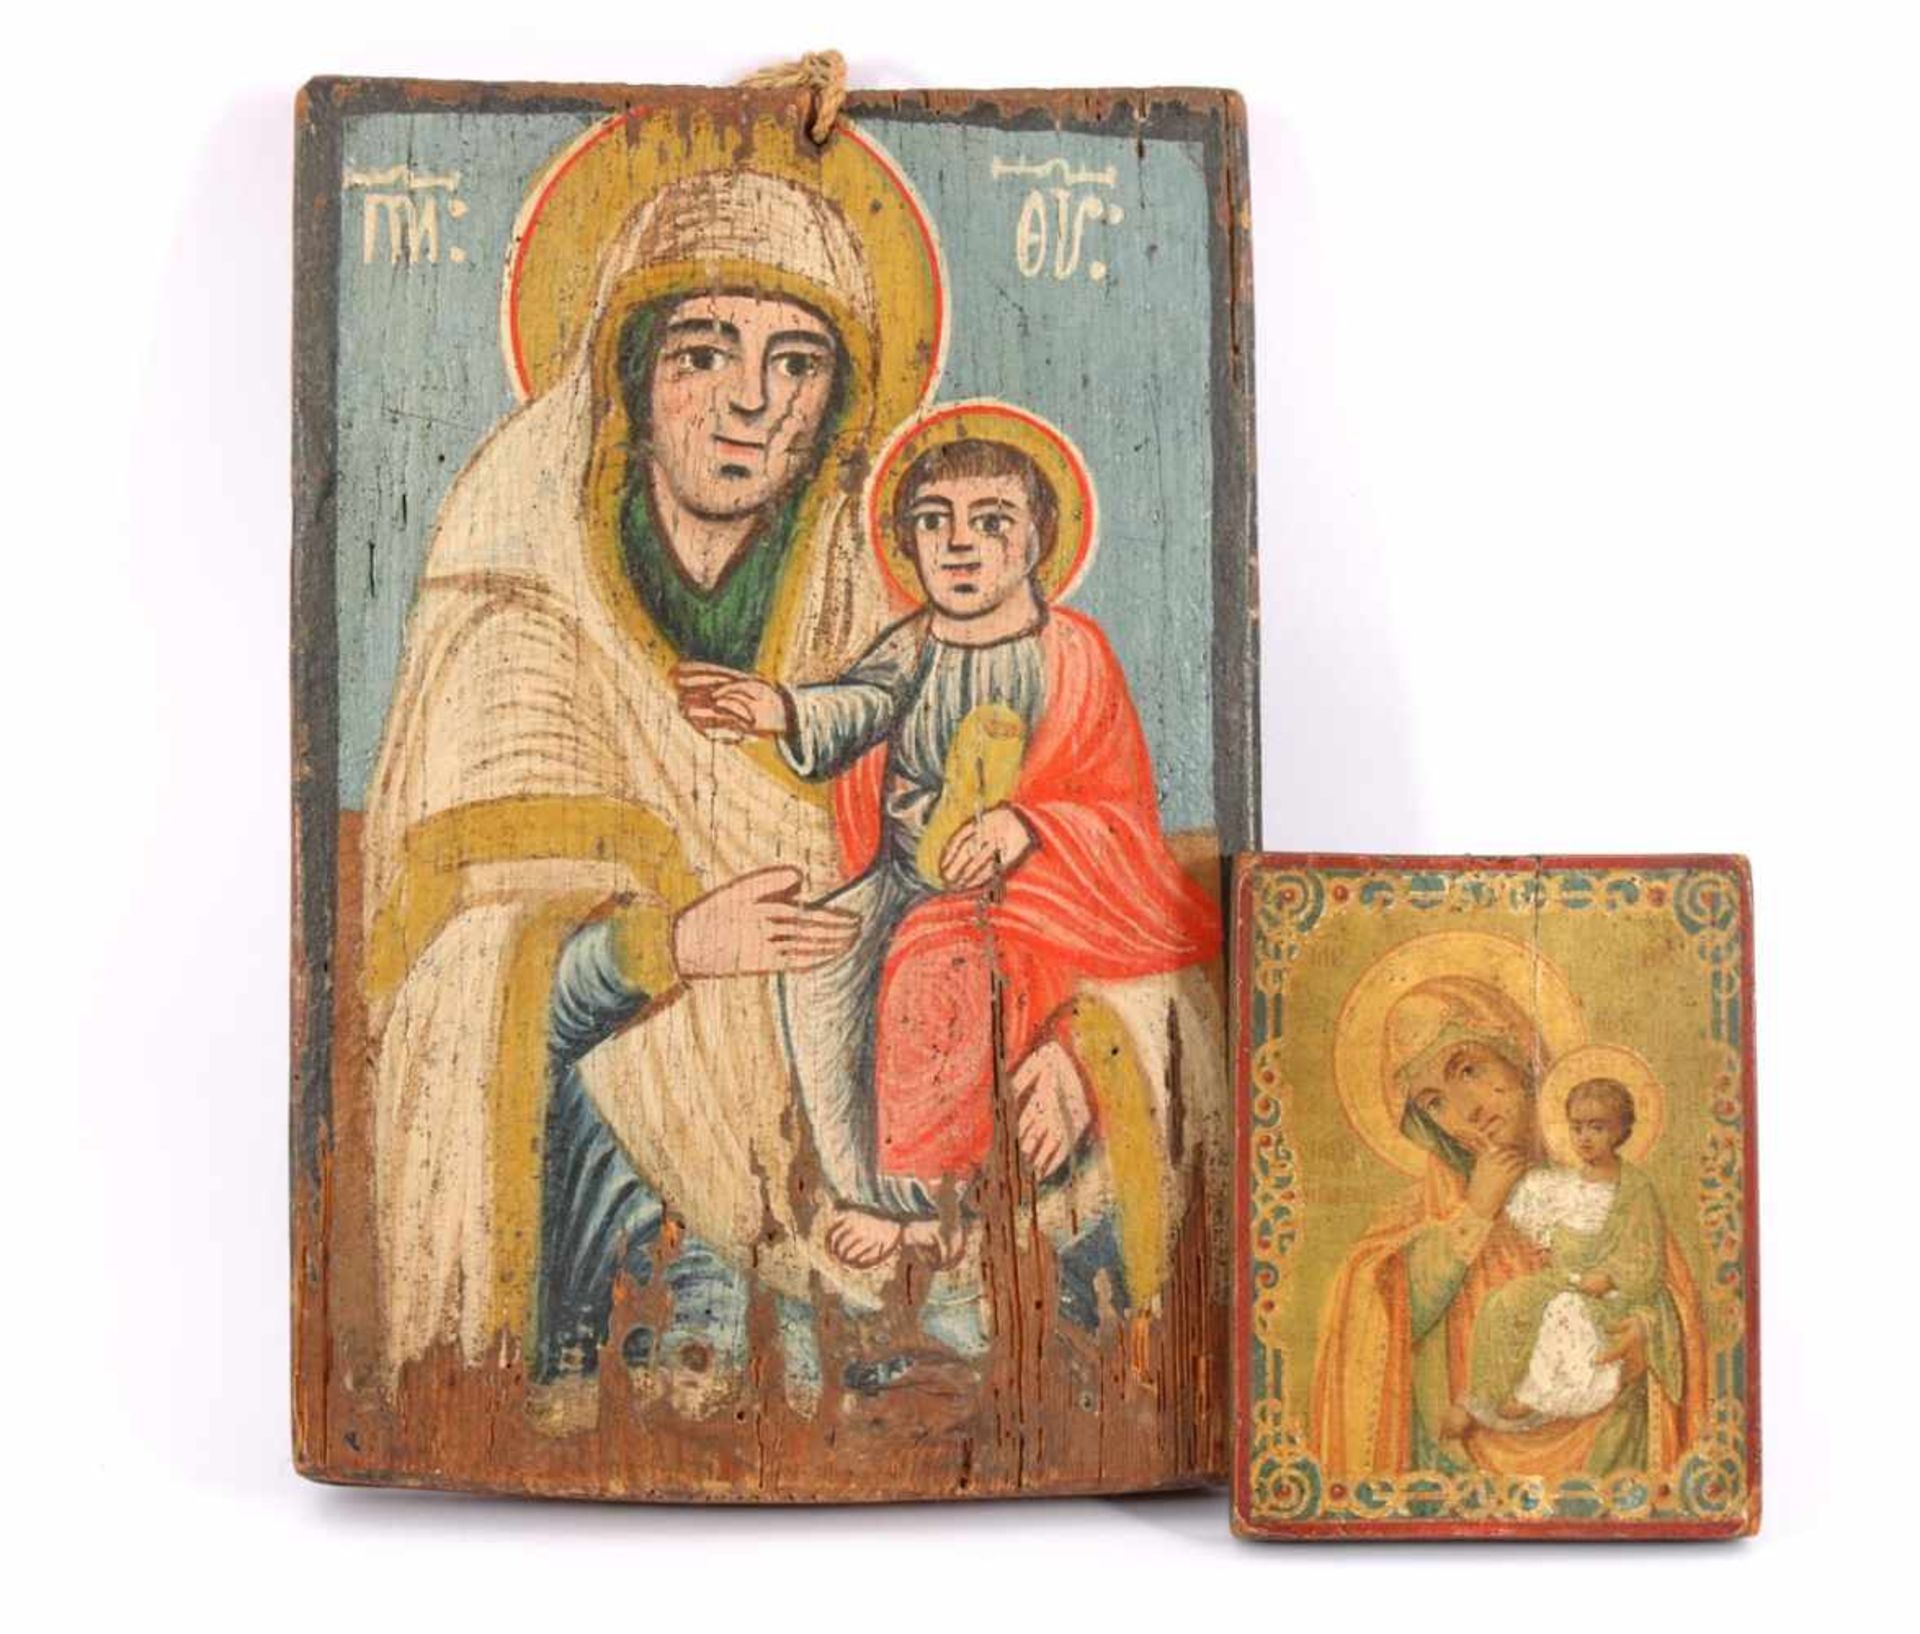 2 Russische ikonen met afbeeldingen van Madonna met kind, 19e eeuw 16x12 cm en 33x23 cm